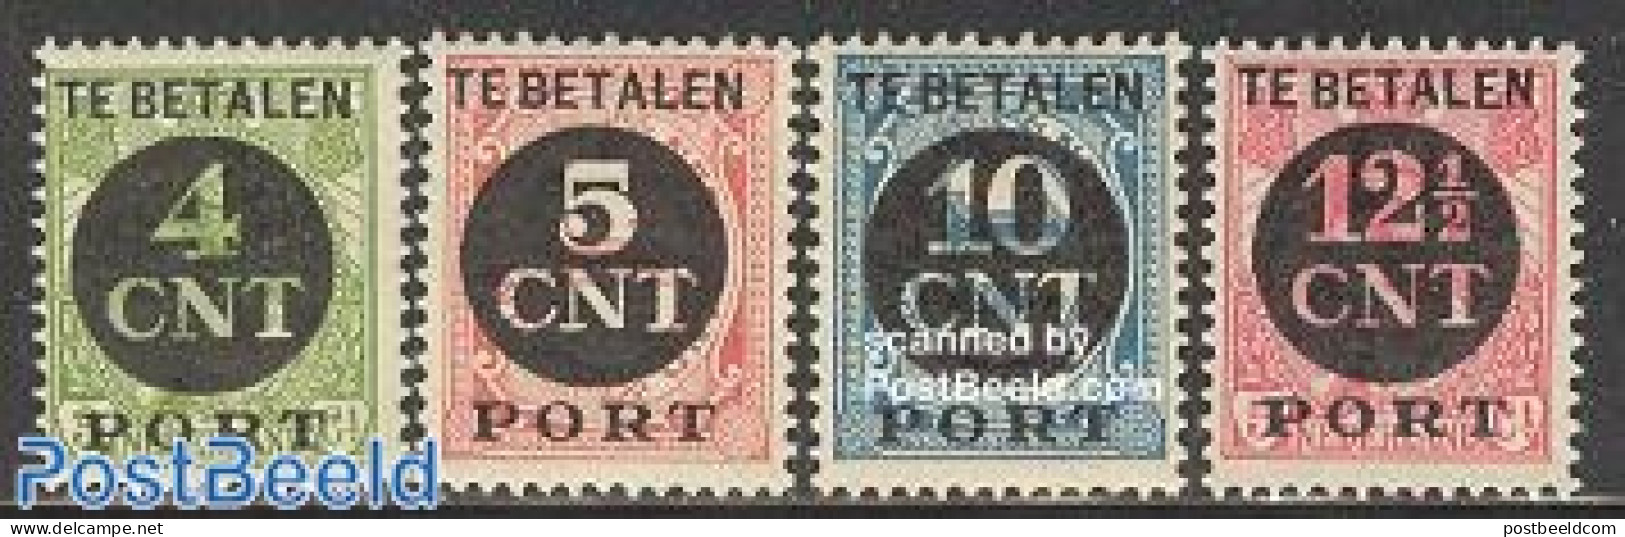 Netherlands 1924 Postage Due, Overprints 4v, Mint NH - Postage Due